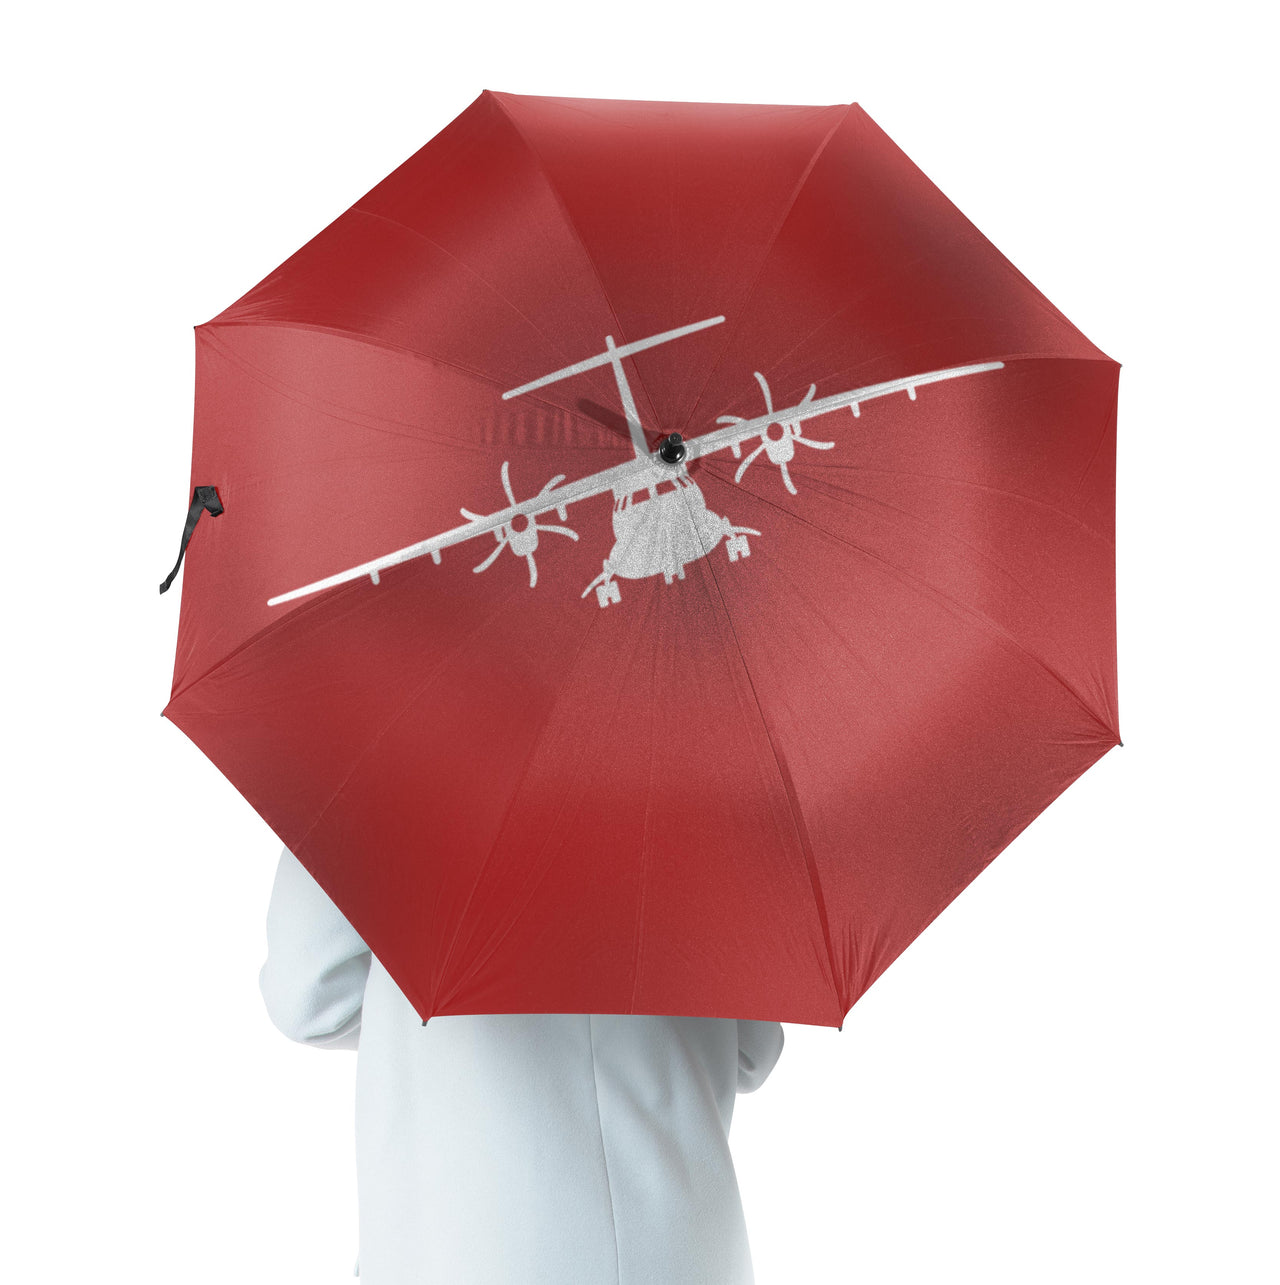 ATR-72 Silhouette Designed Umbrella